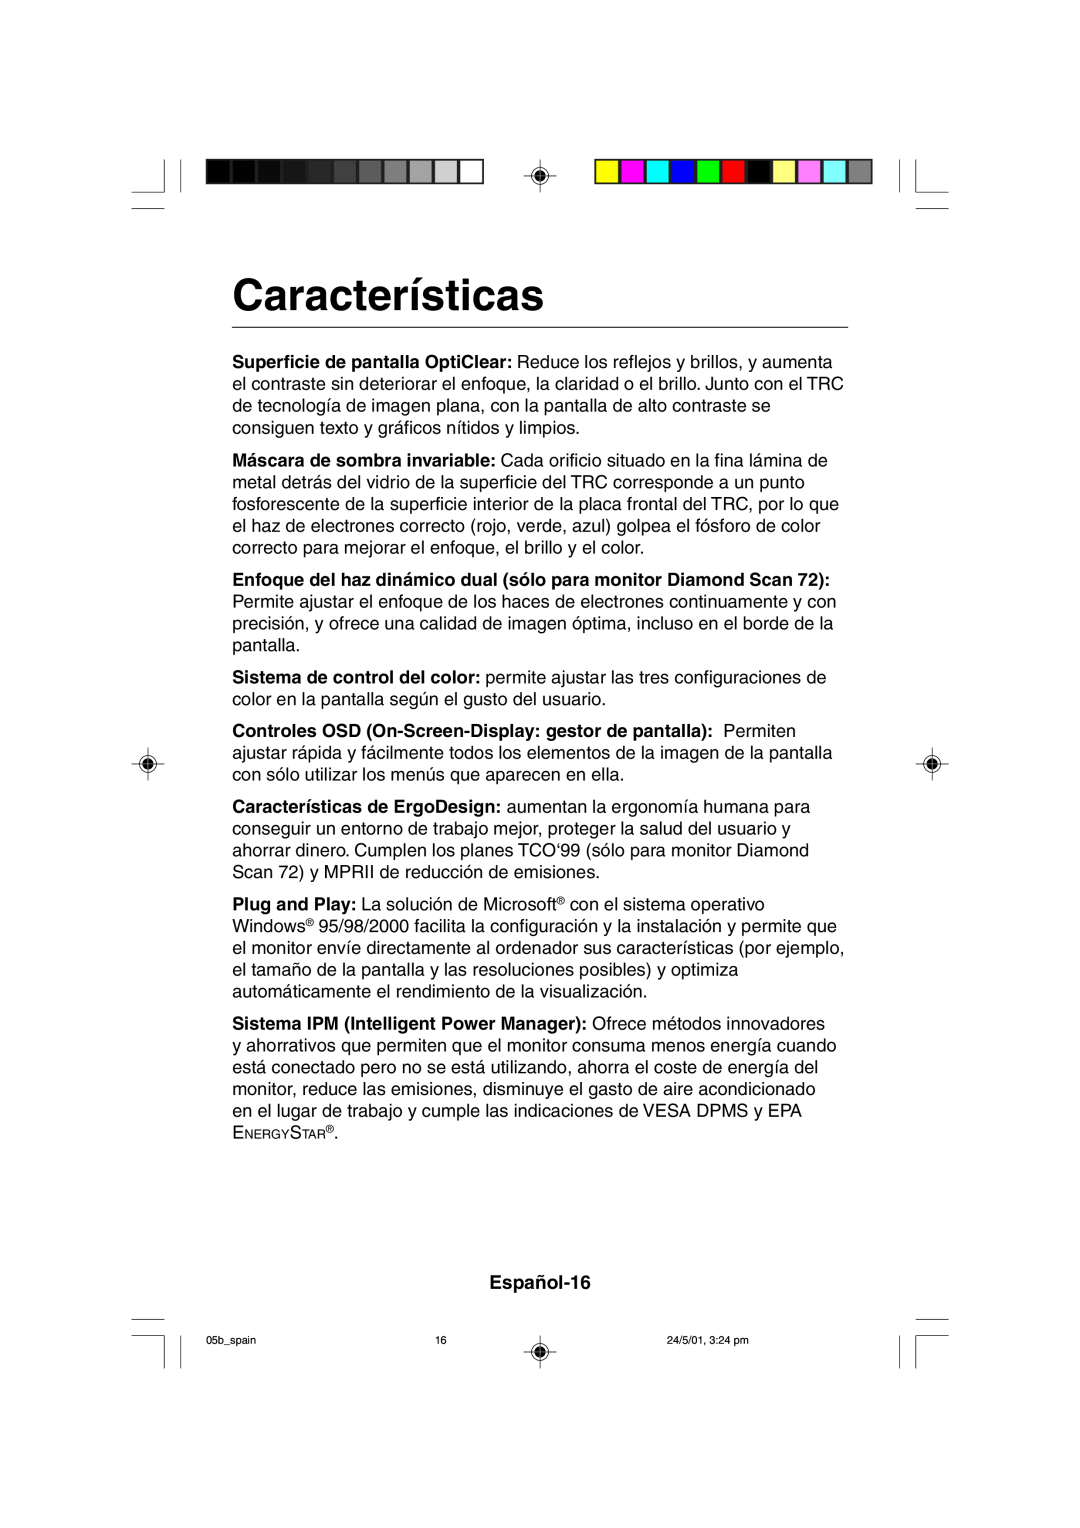 Mitsubishi Electronics M557 user manual Características, Español-16 